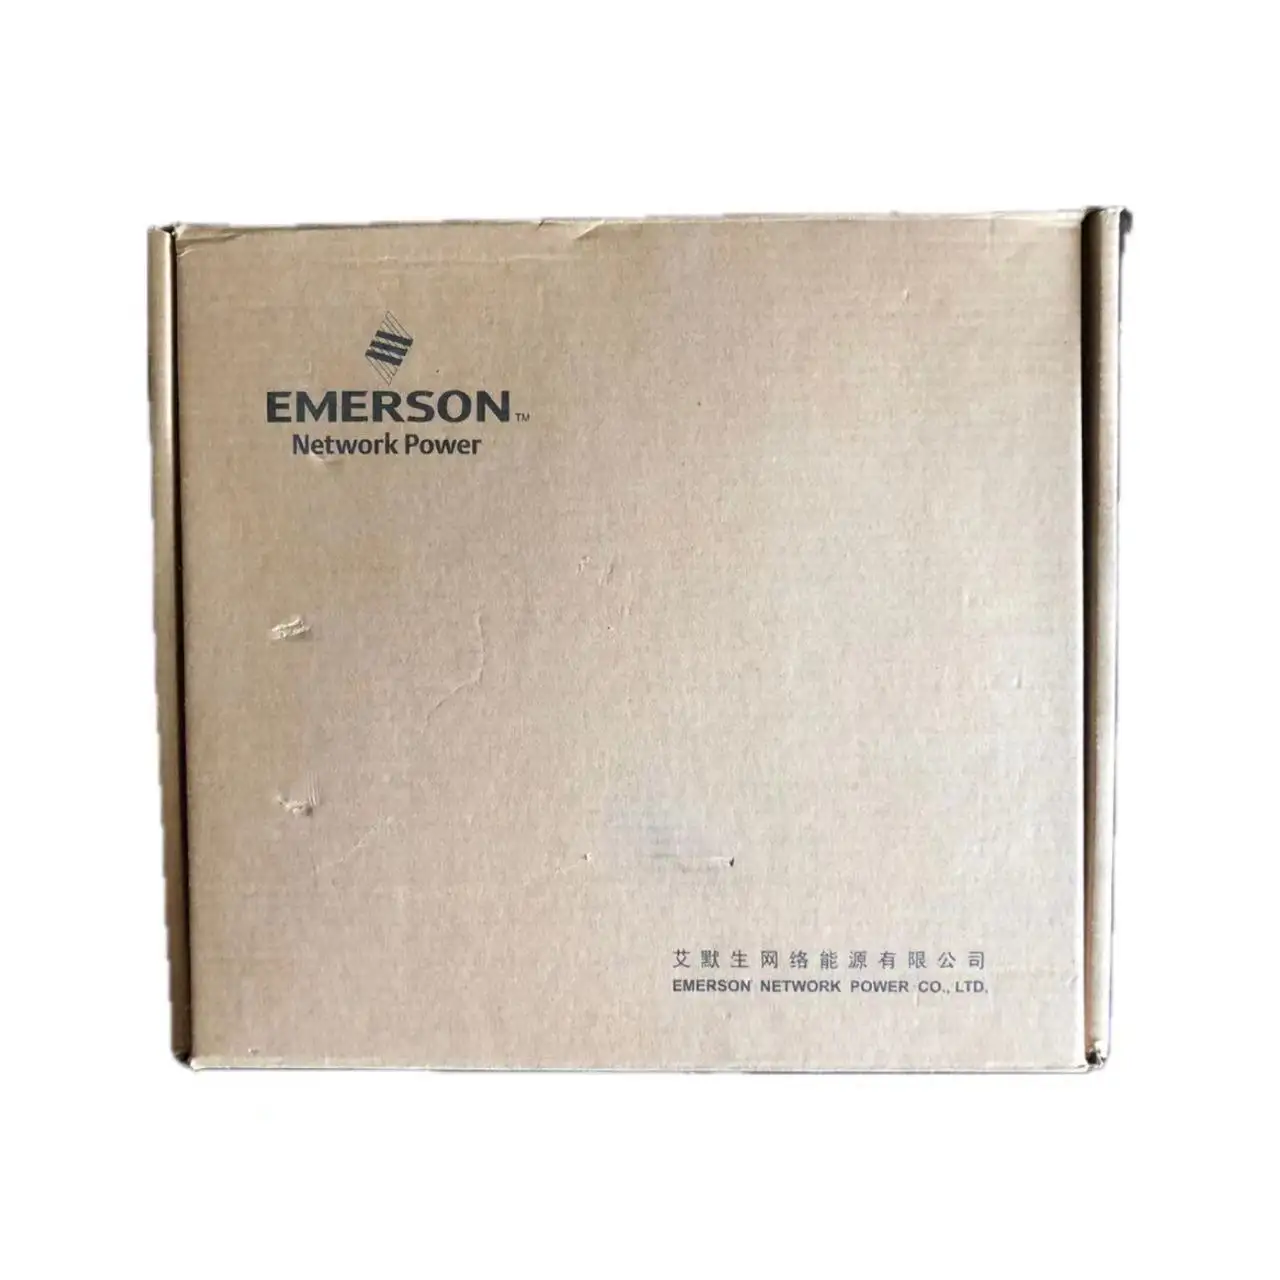 EMERSON envía rápidamente nuevos productos en el momento de la entrega, en el 2017